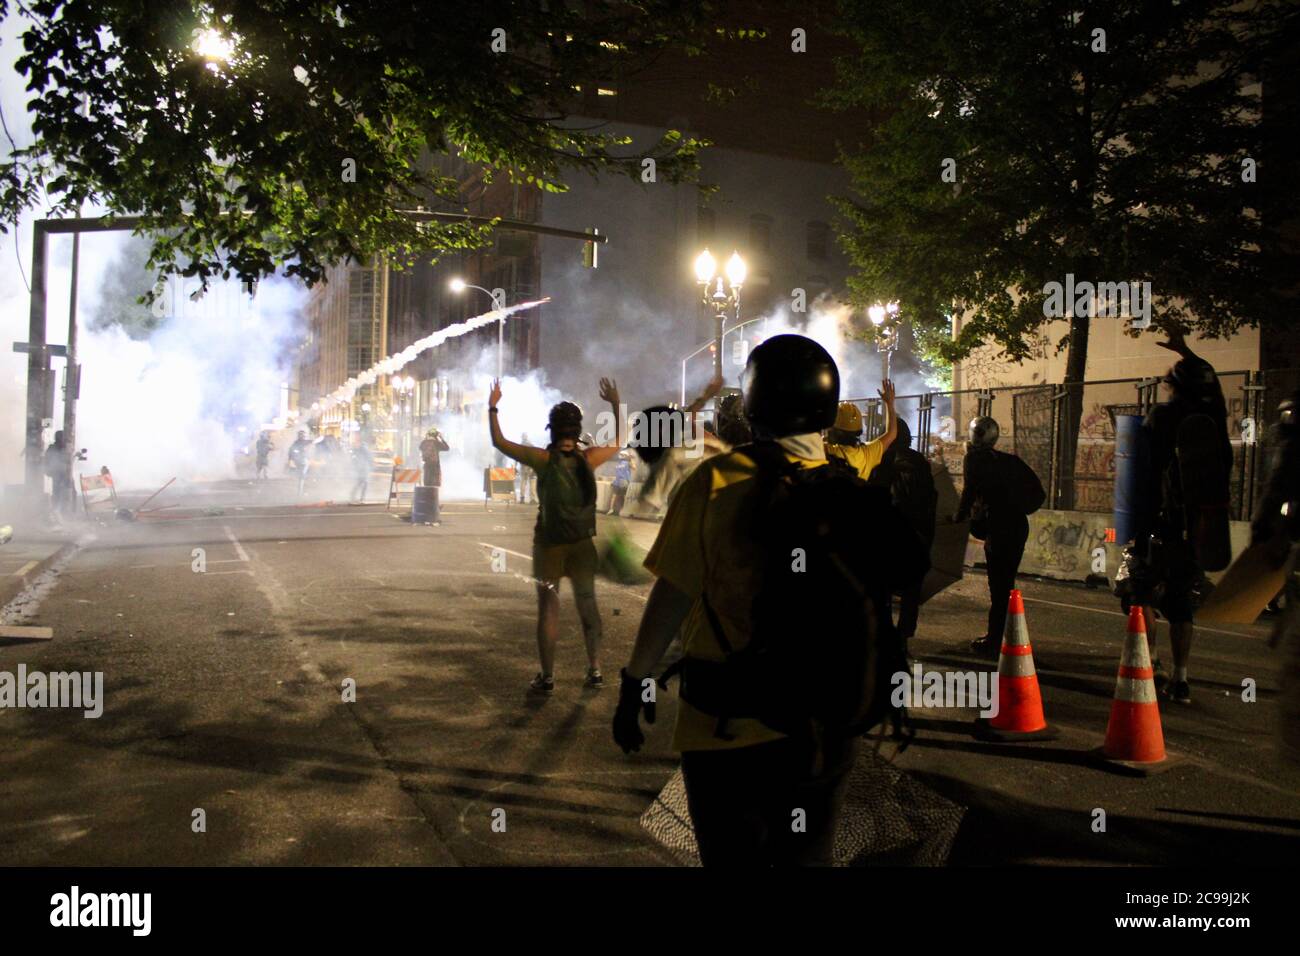 Portland, Oregon, USA. Juli 2020. Tränengas durchdringt die Luft, während Demonstranten gegen Bundesagenten und lokale Polizei in der Innenstadt demonstrieren. Quelle: Amy Katz/ZUMA Wire/Alamy Live News Stockfoto